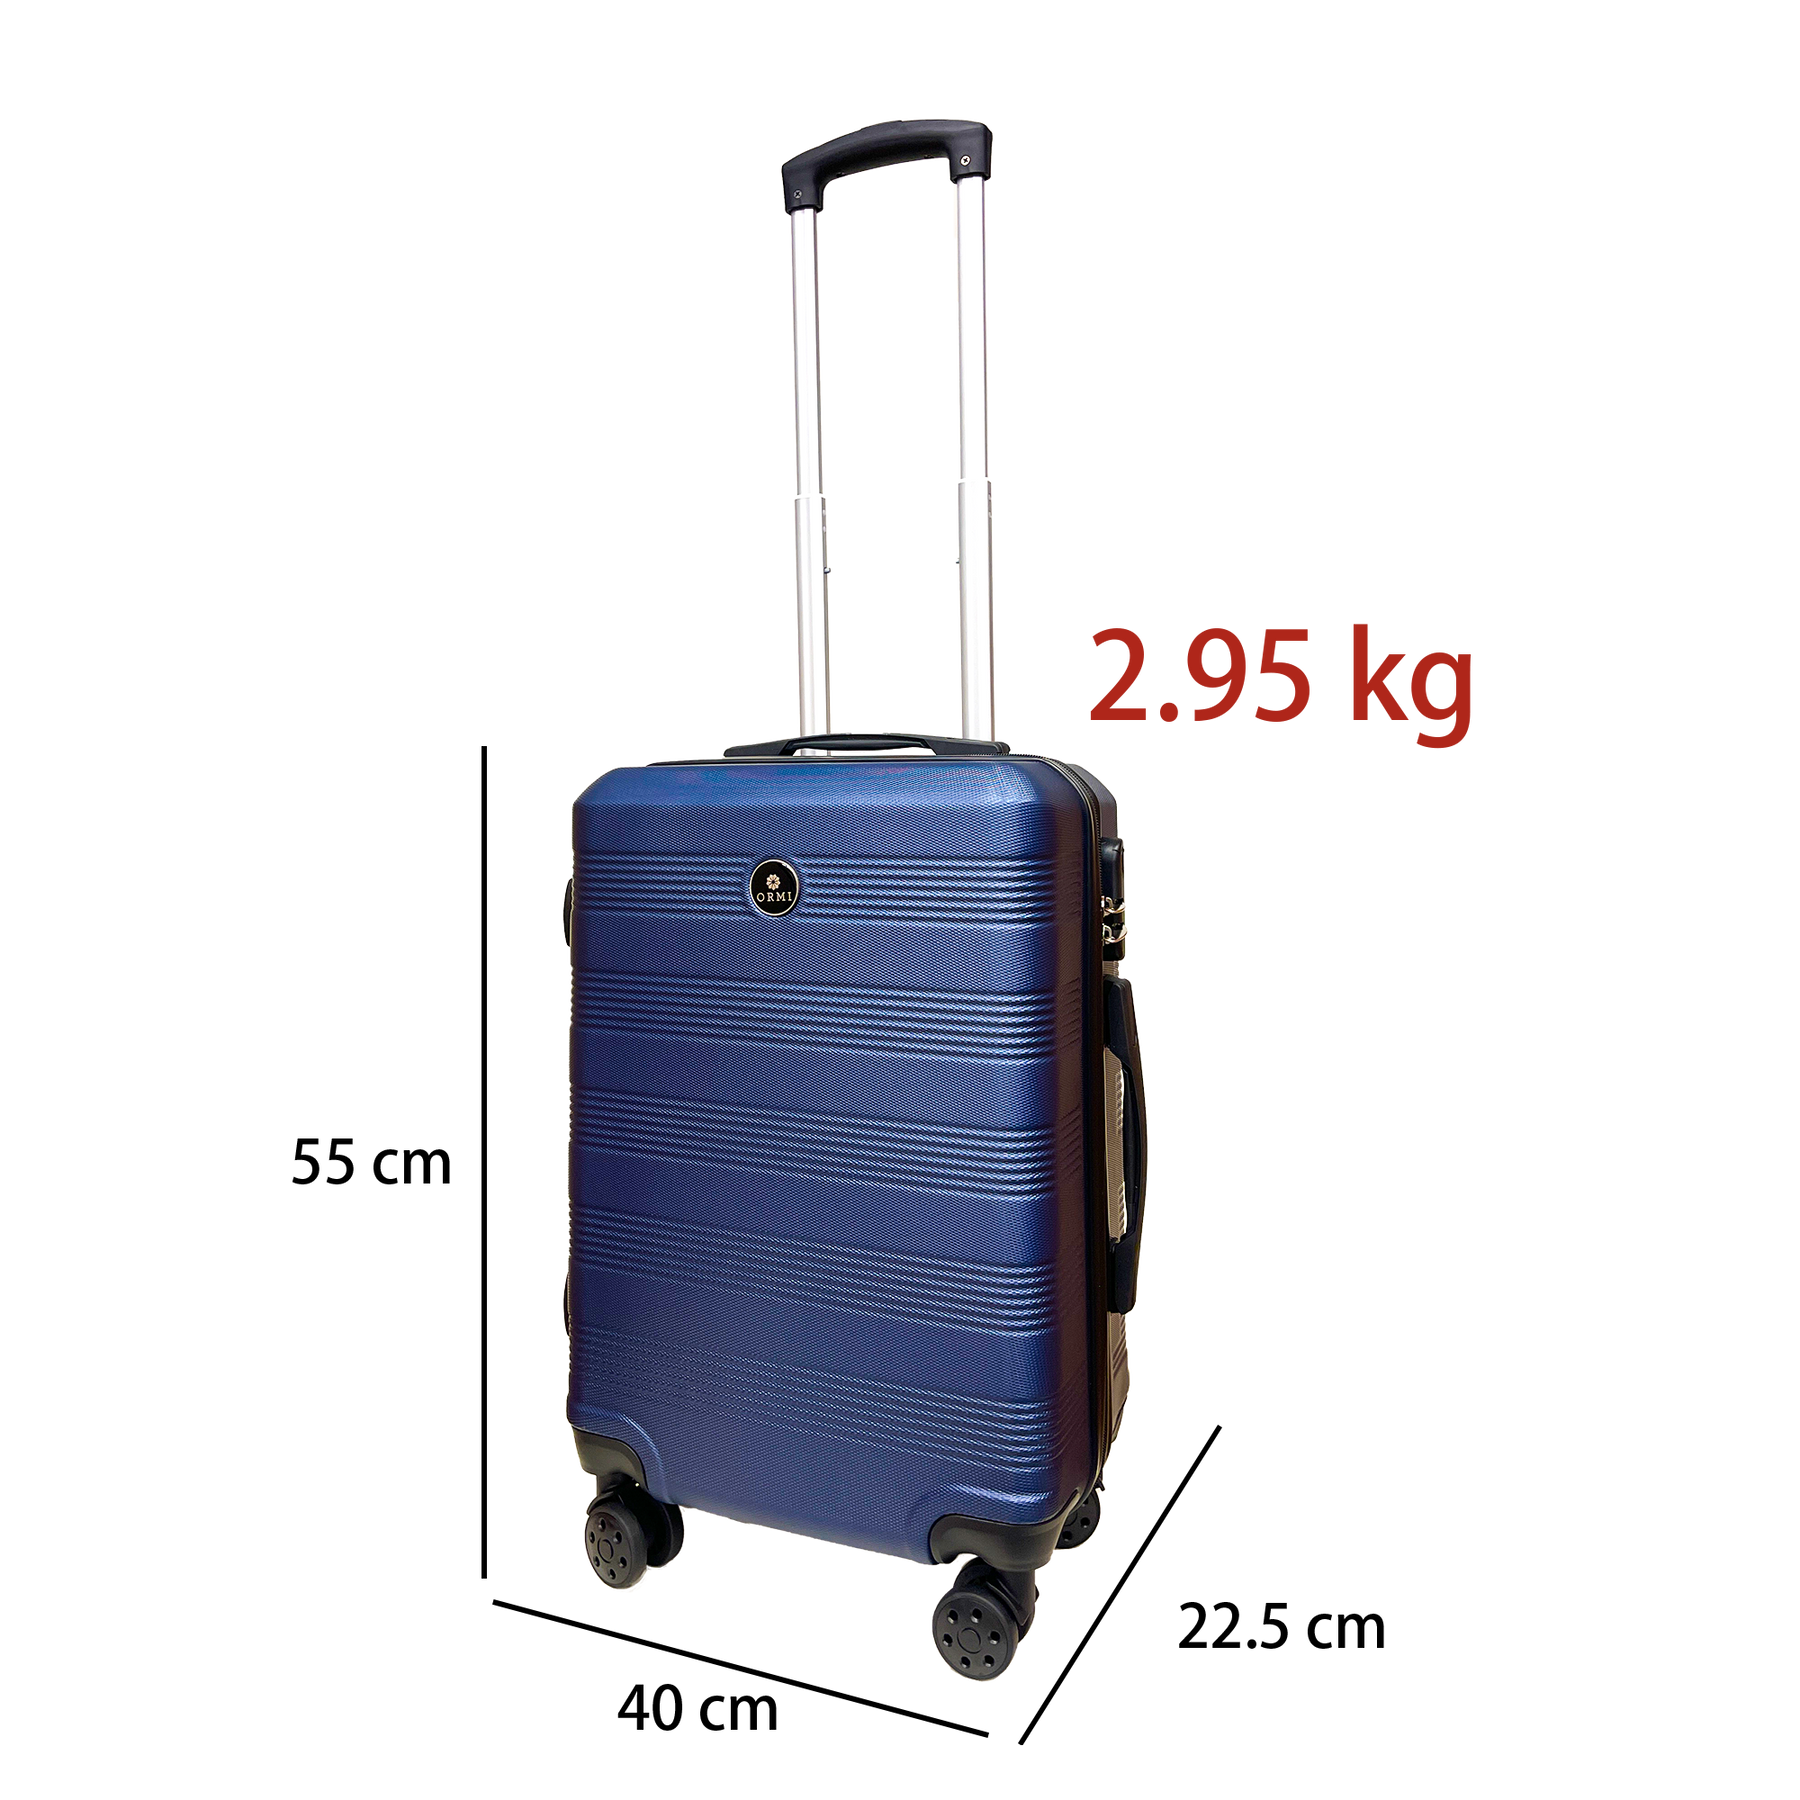 Zestaw 3 walizek na kółkach Ormi WavyLine z tworzywa ABS - Mała, Średnia i Duża, ultralekka